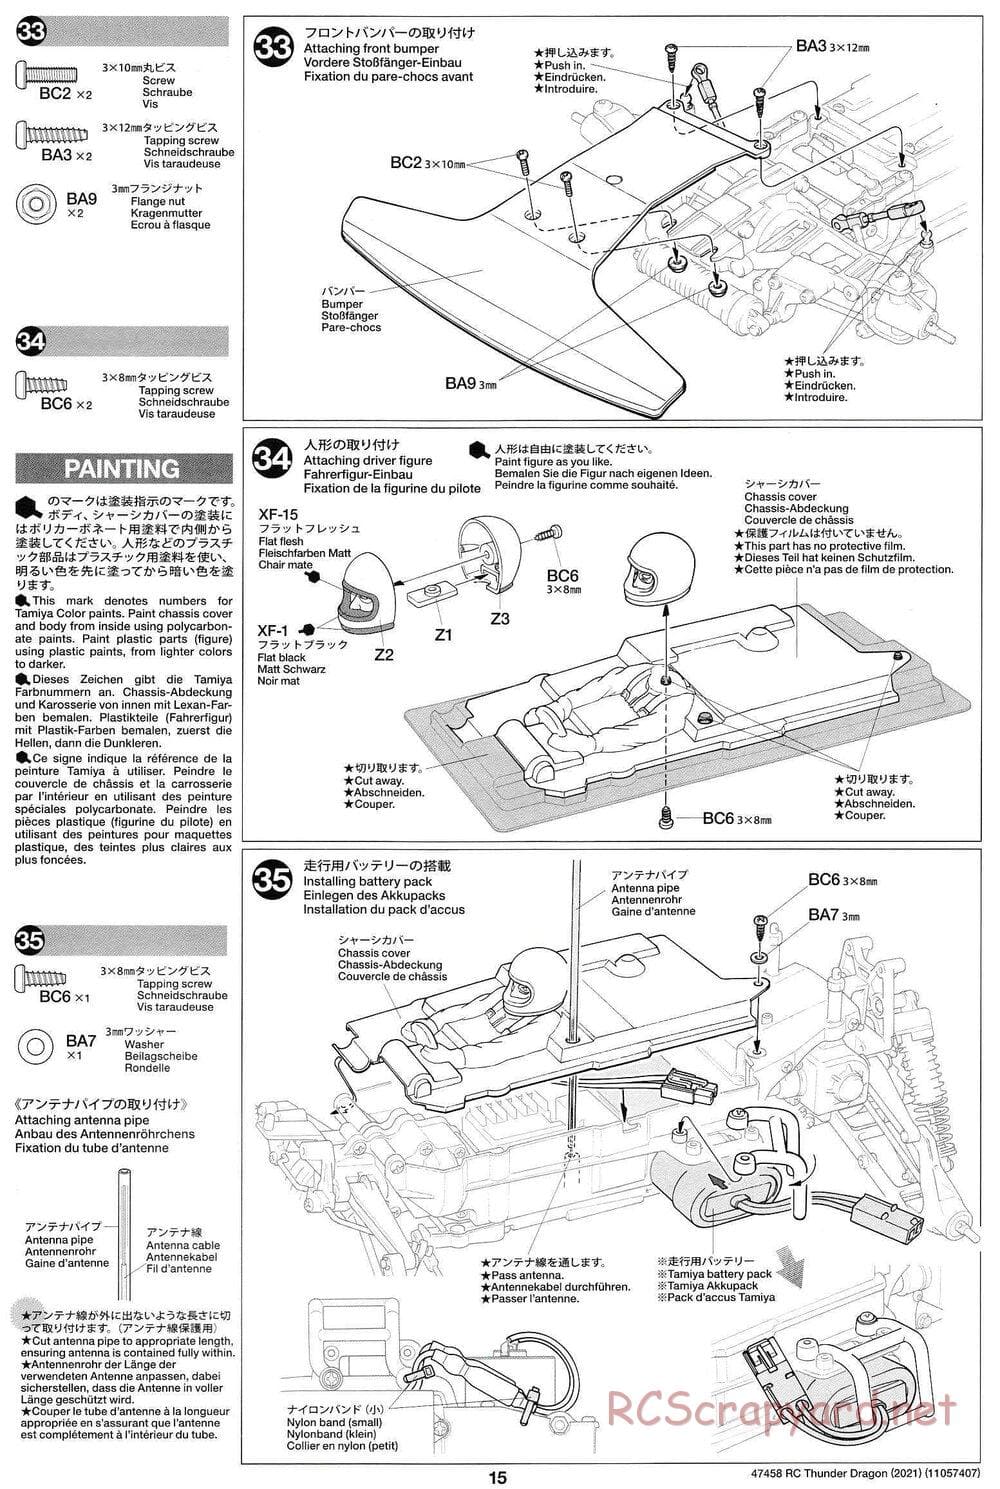 Tamiya - Thunder Dragon (2021) Chassis - Manual - Page 15